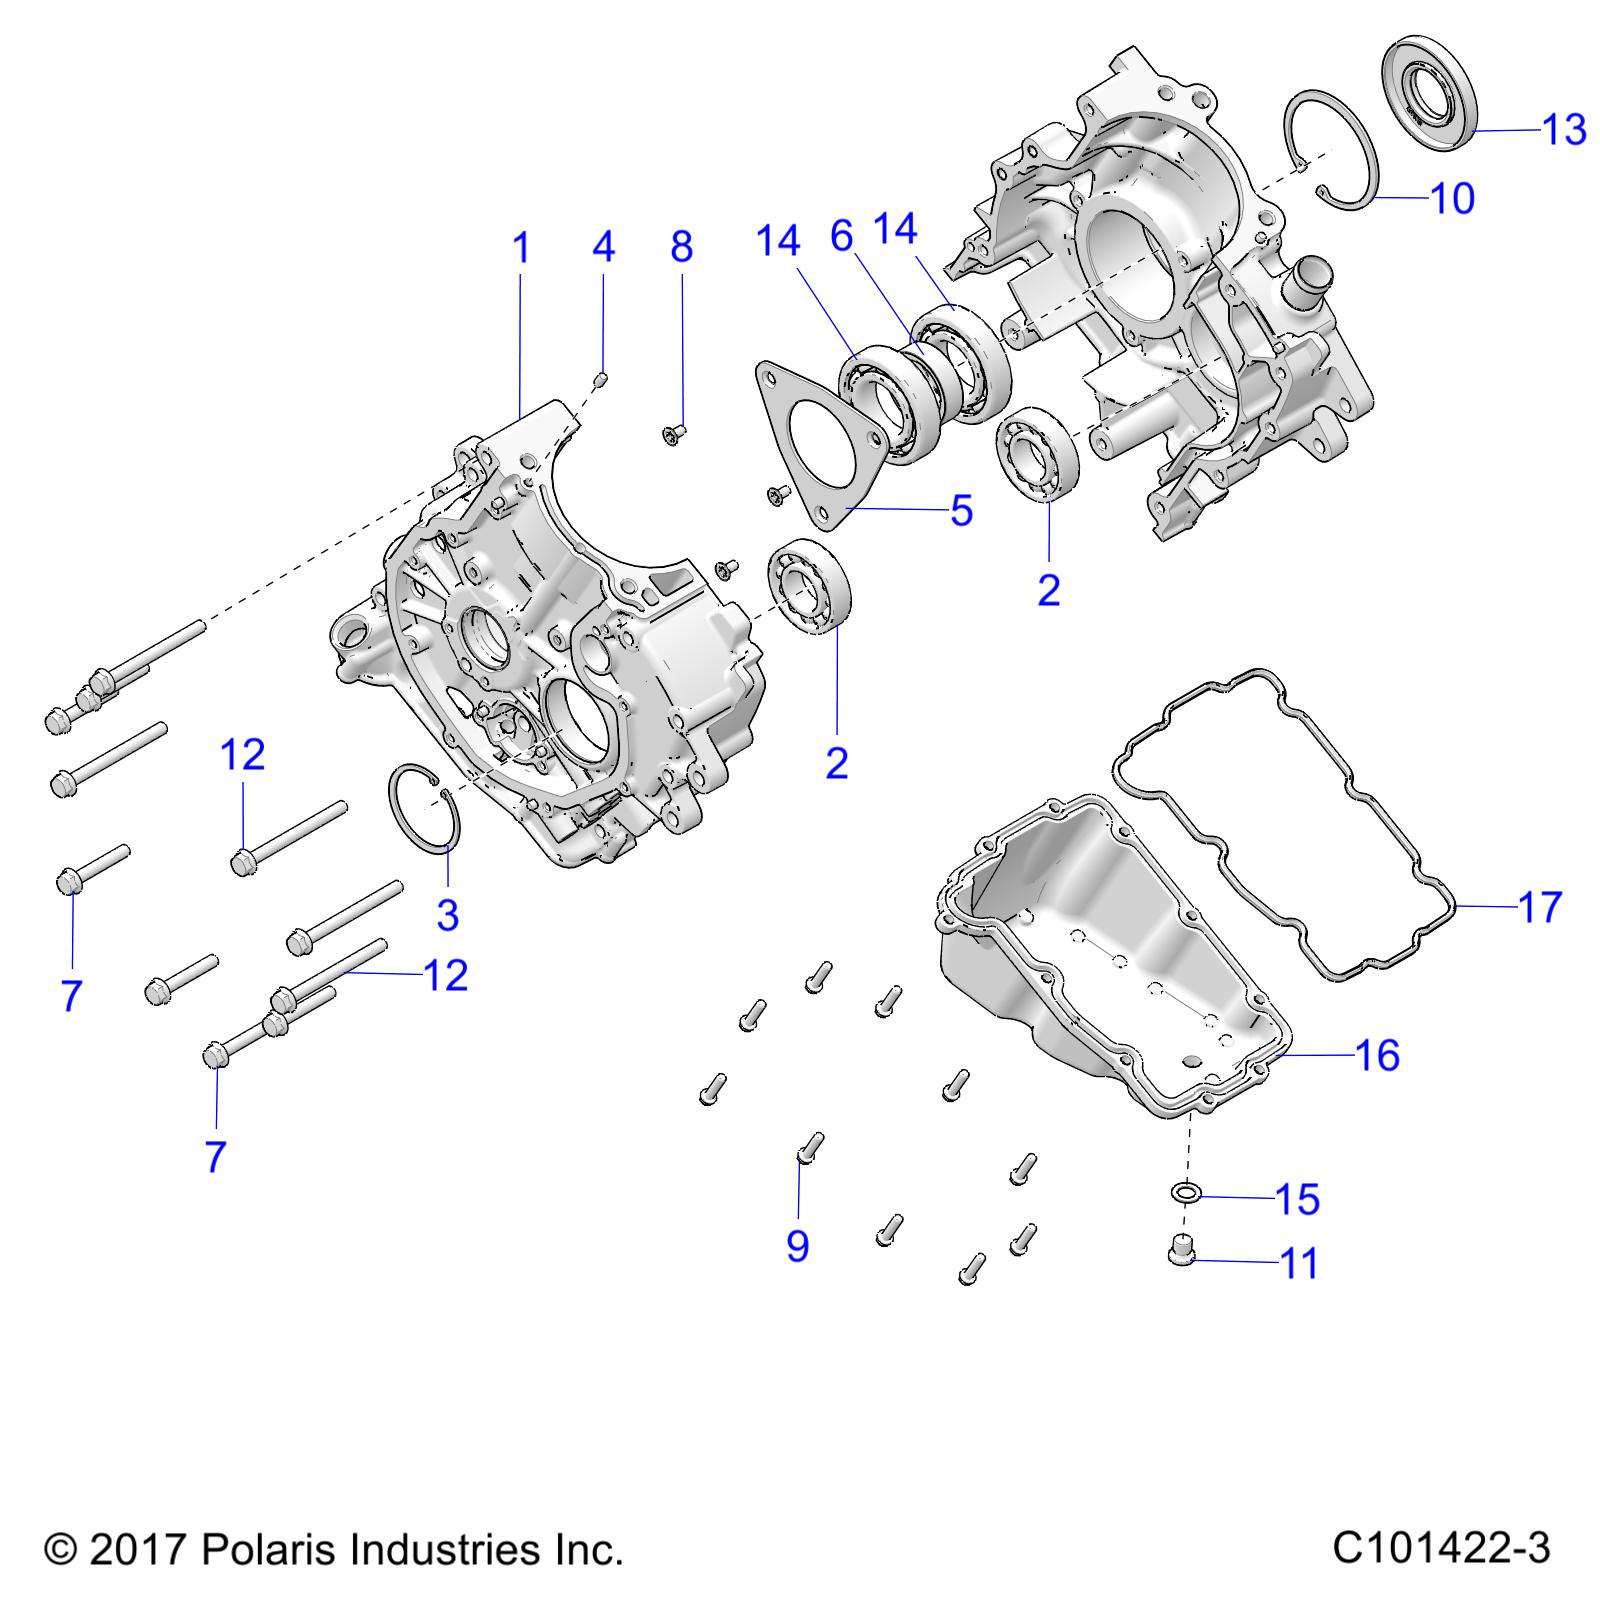 ENGINE, CRANKCASE - A20SEA57A1/A4/A7/A9/B1/B4/B7/B9 (C101422-3)